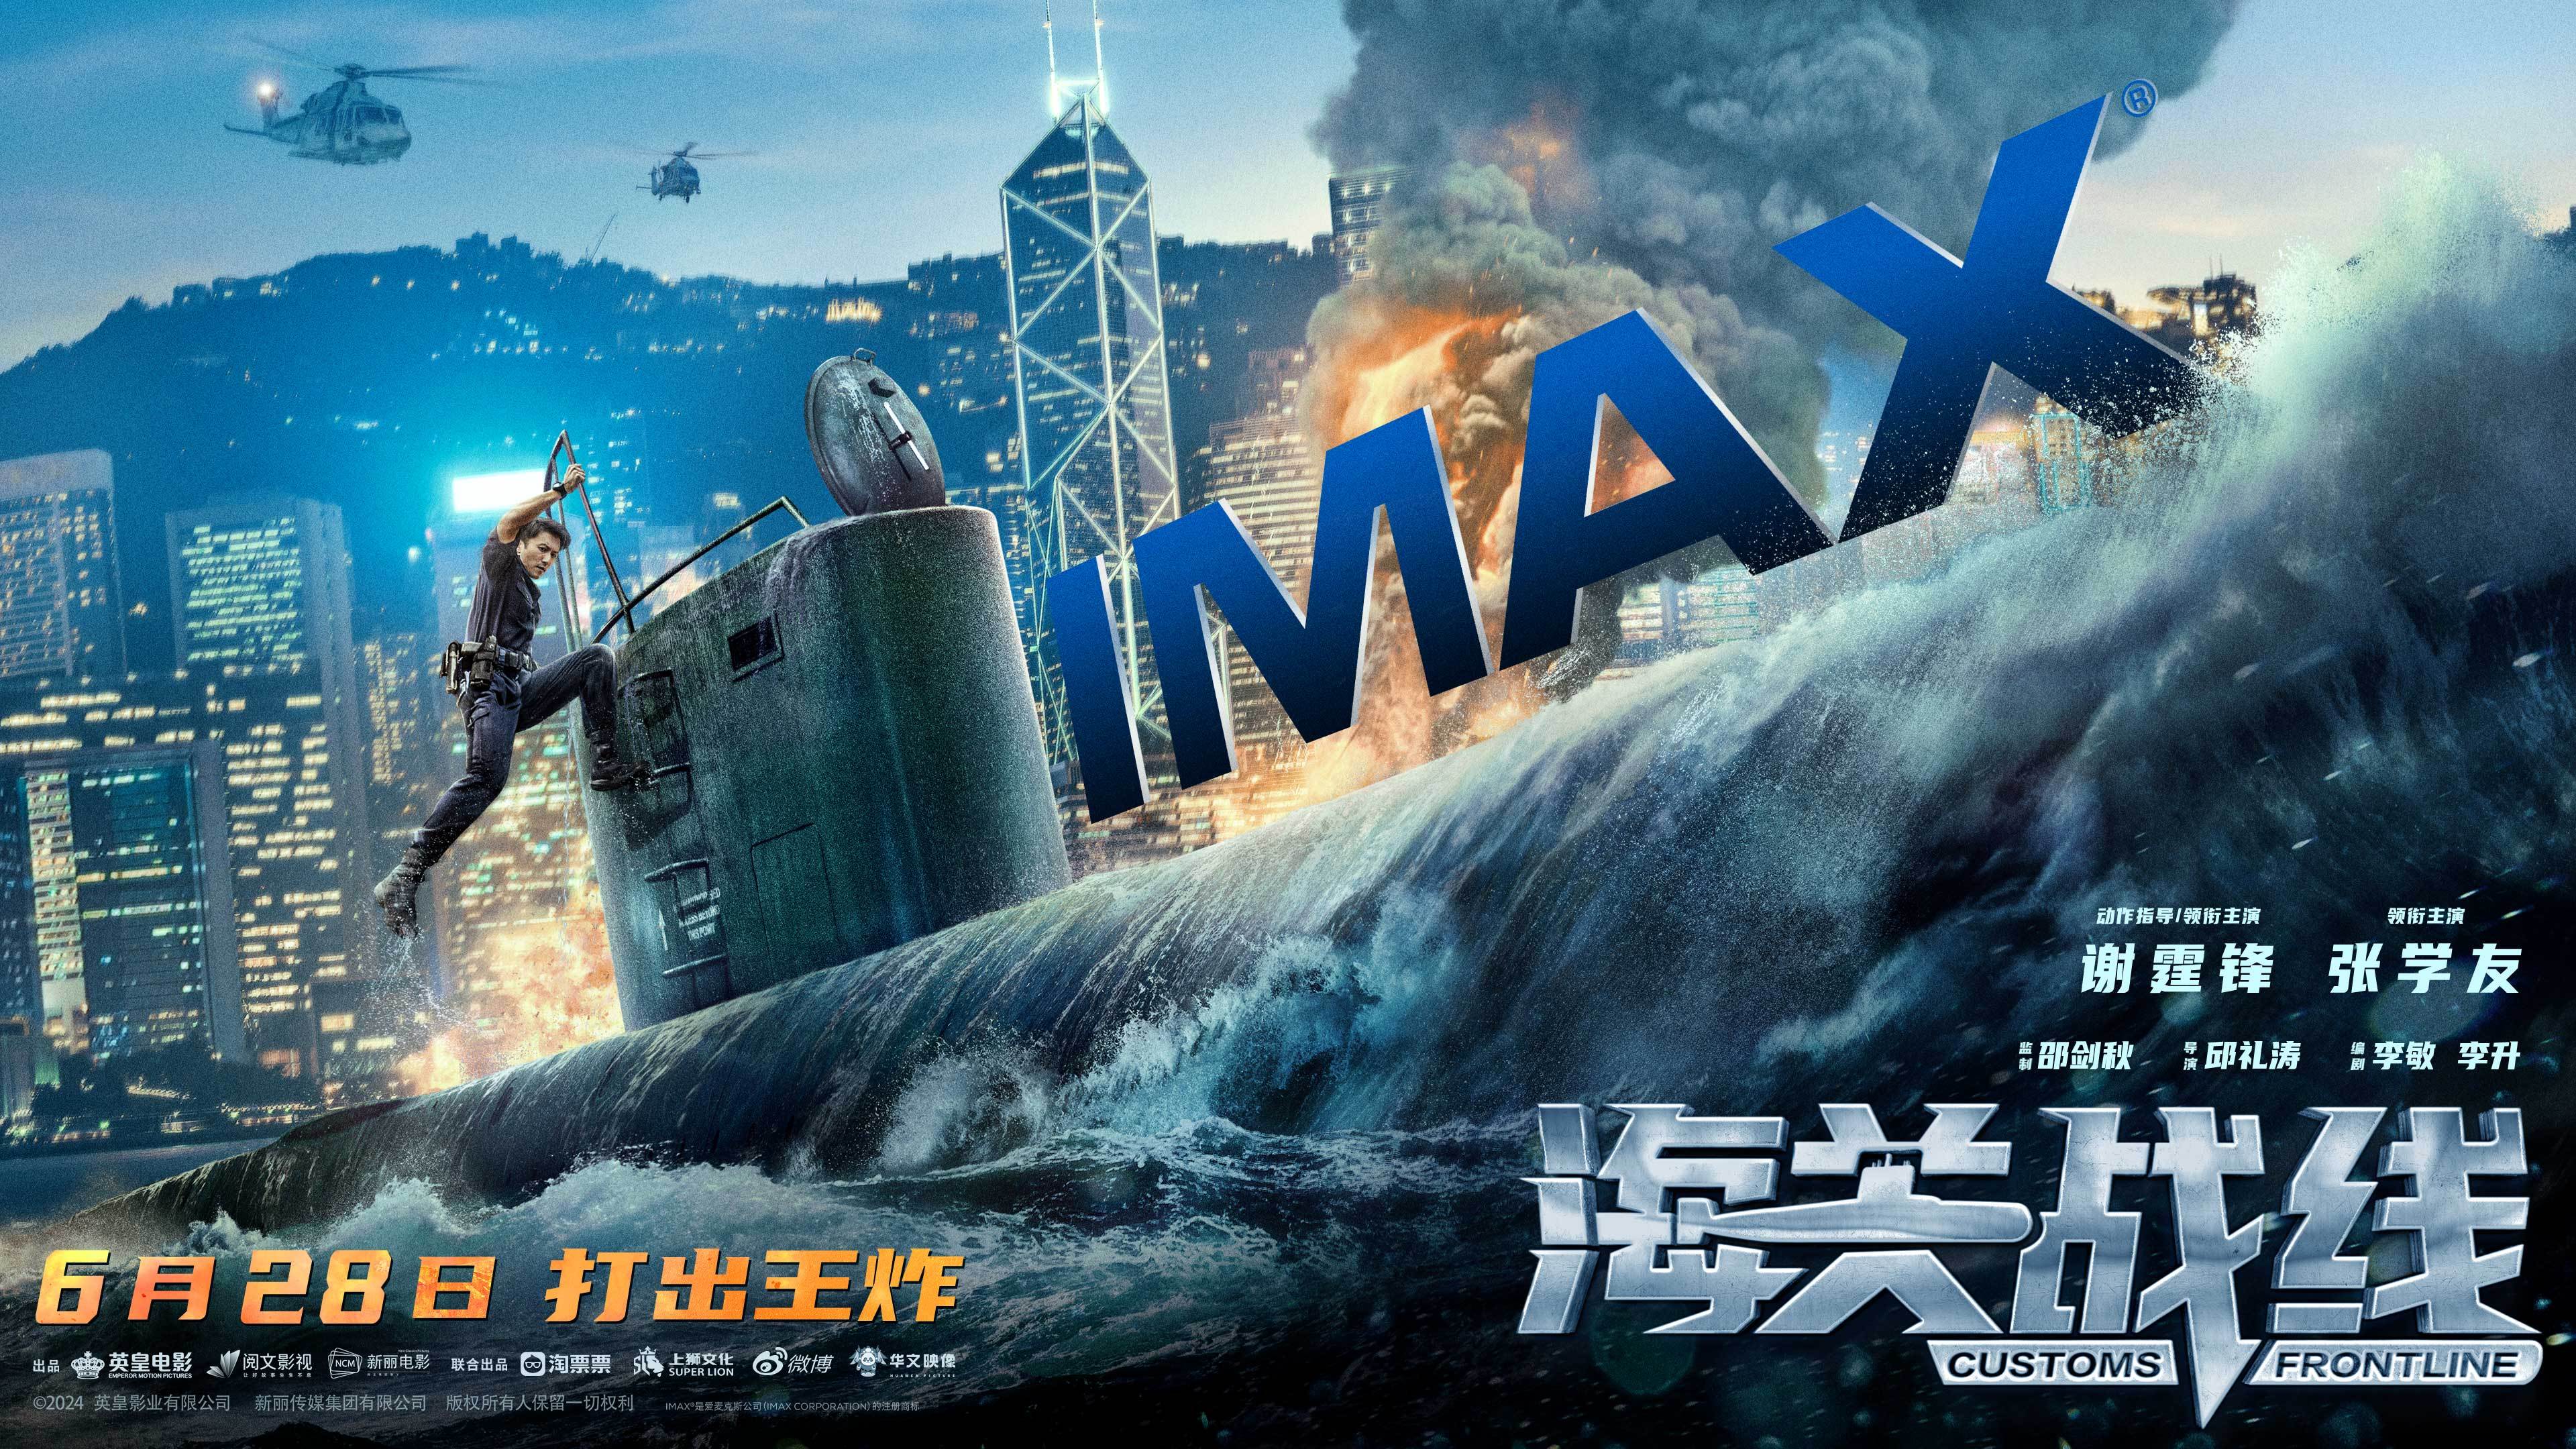 《海关战线》发布IMAX专属海报 6月28日谢霆锋张学友上演高燃海上大战